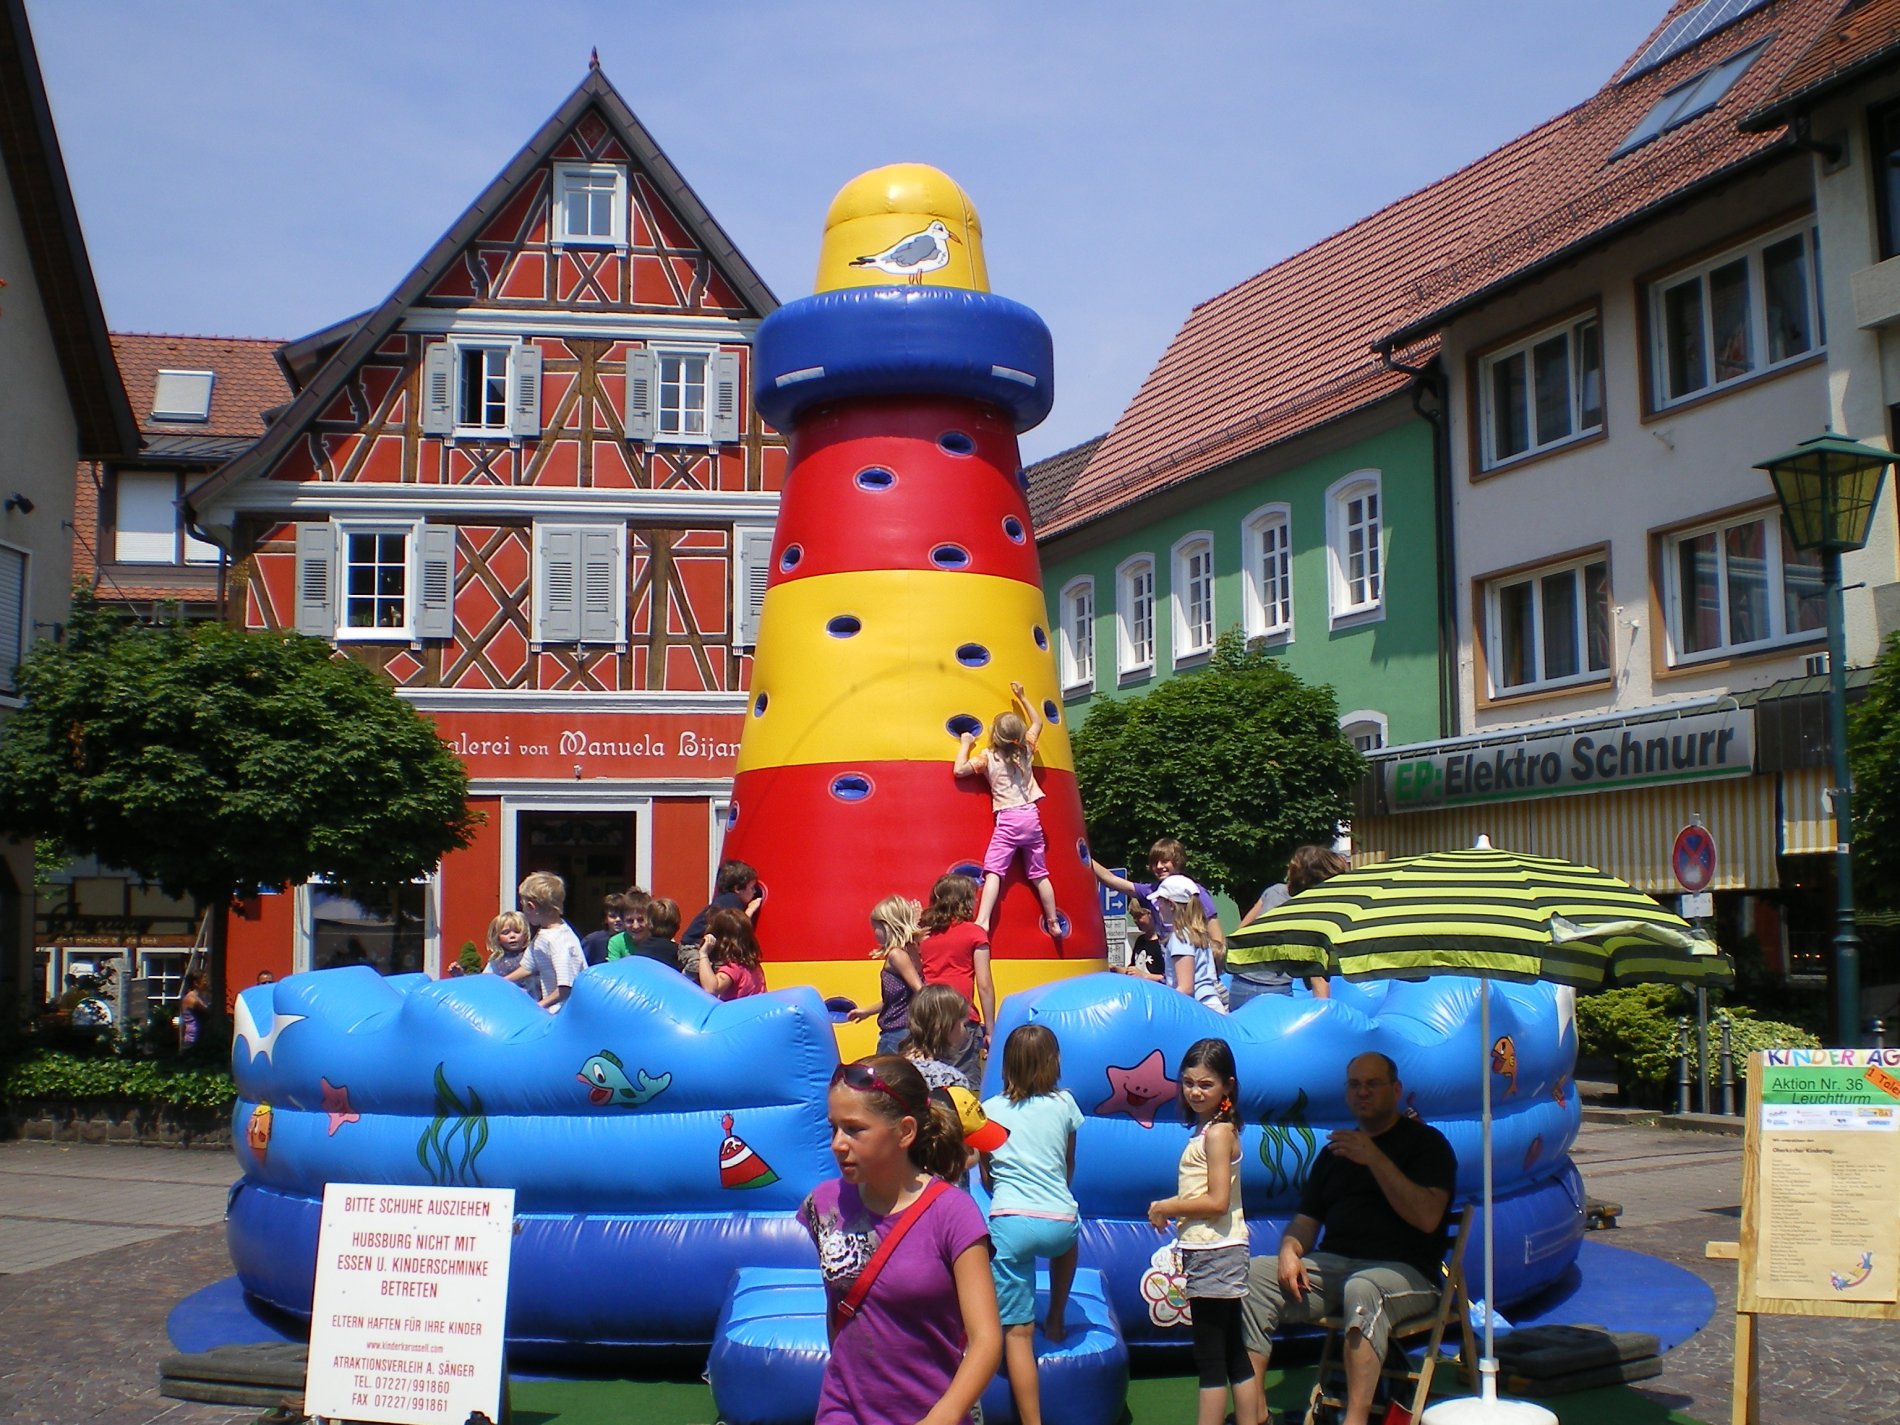 "Kinder spielen für Kinder" heißt das Motto des Oberkircher Kindertages / Urheber: